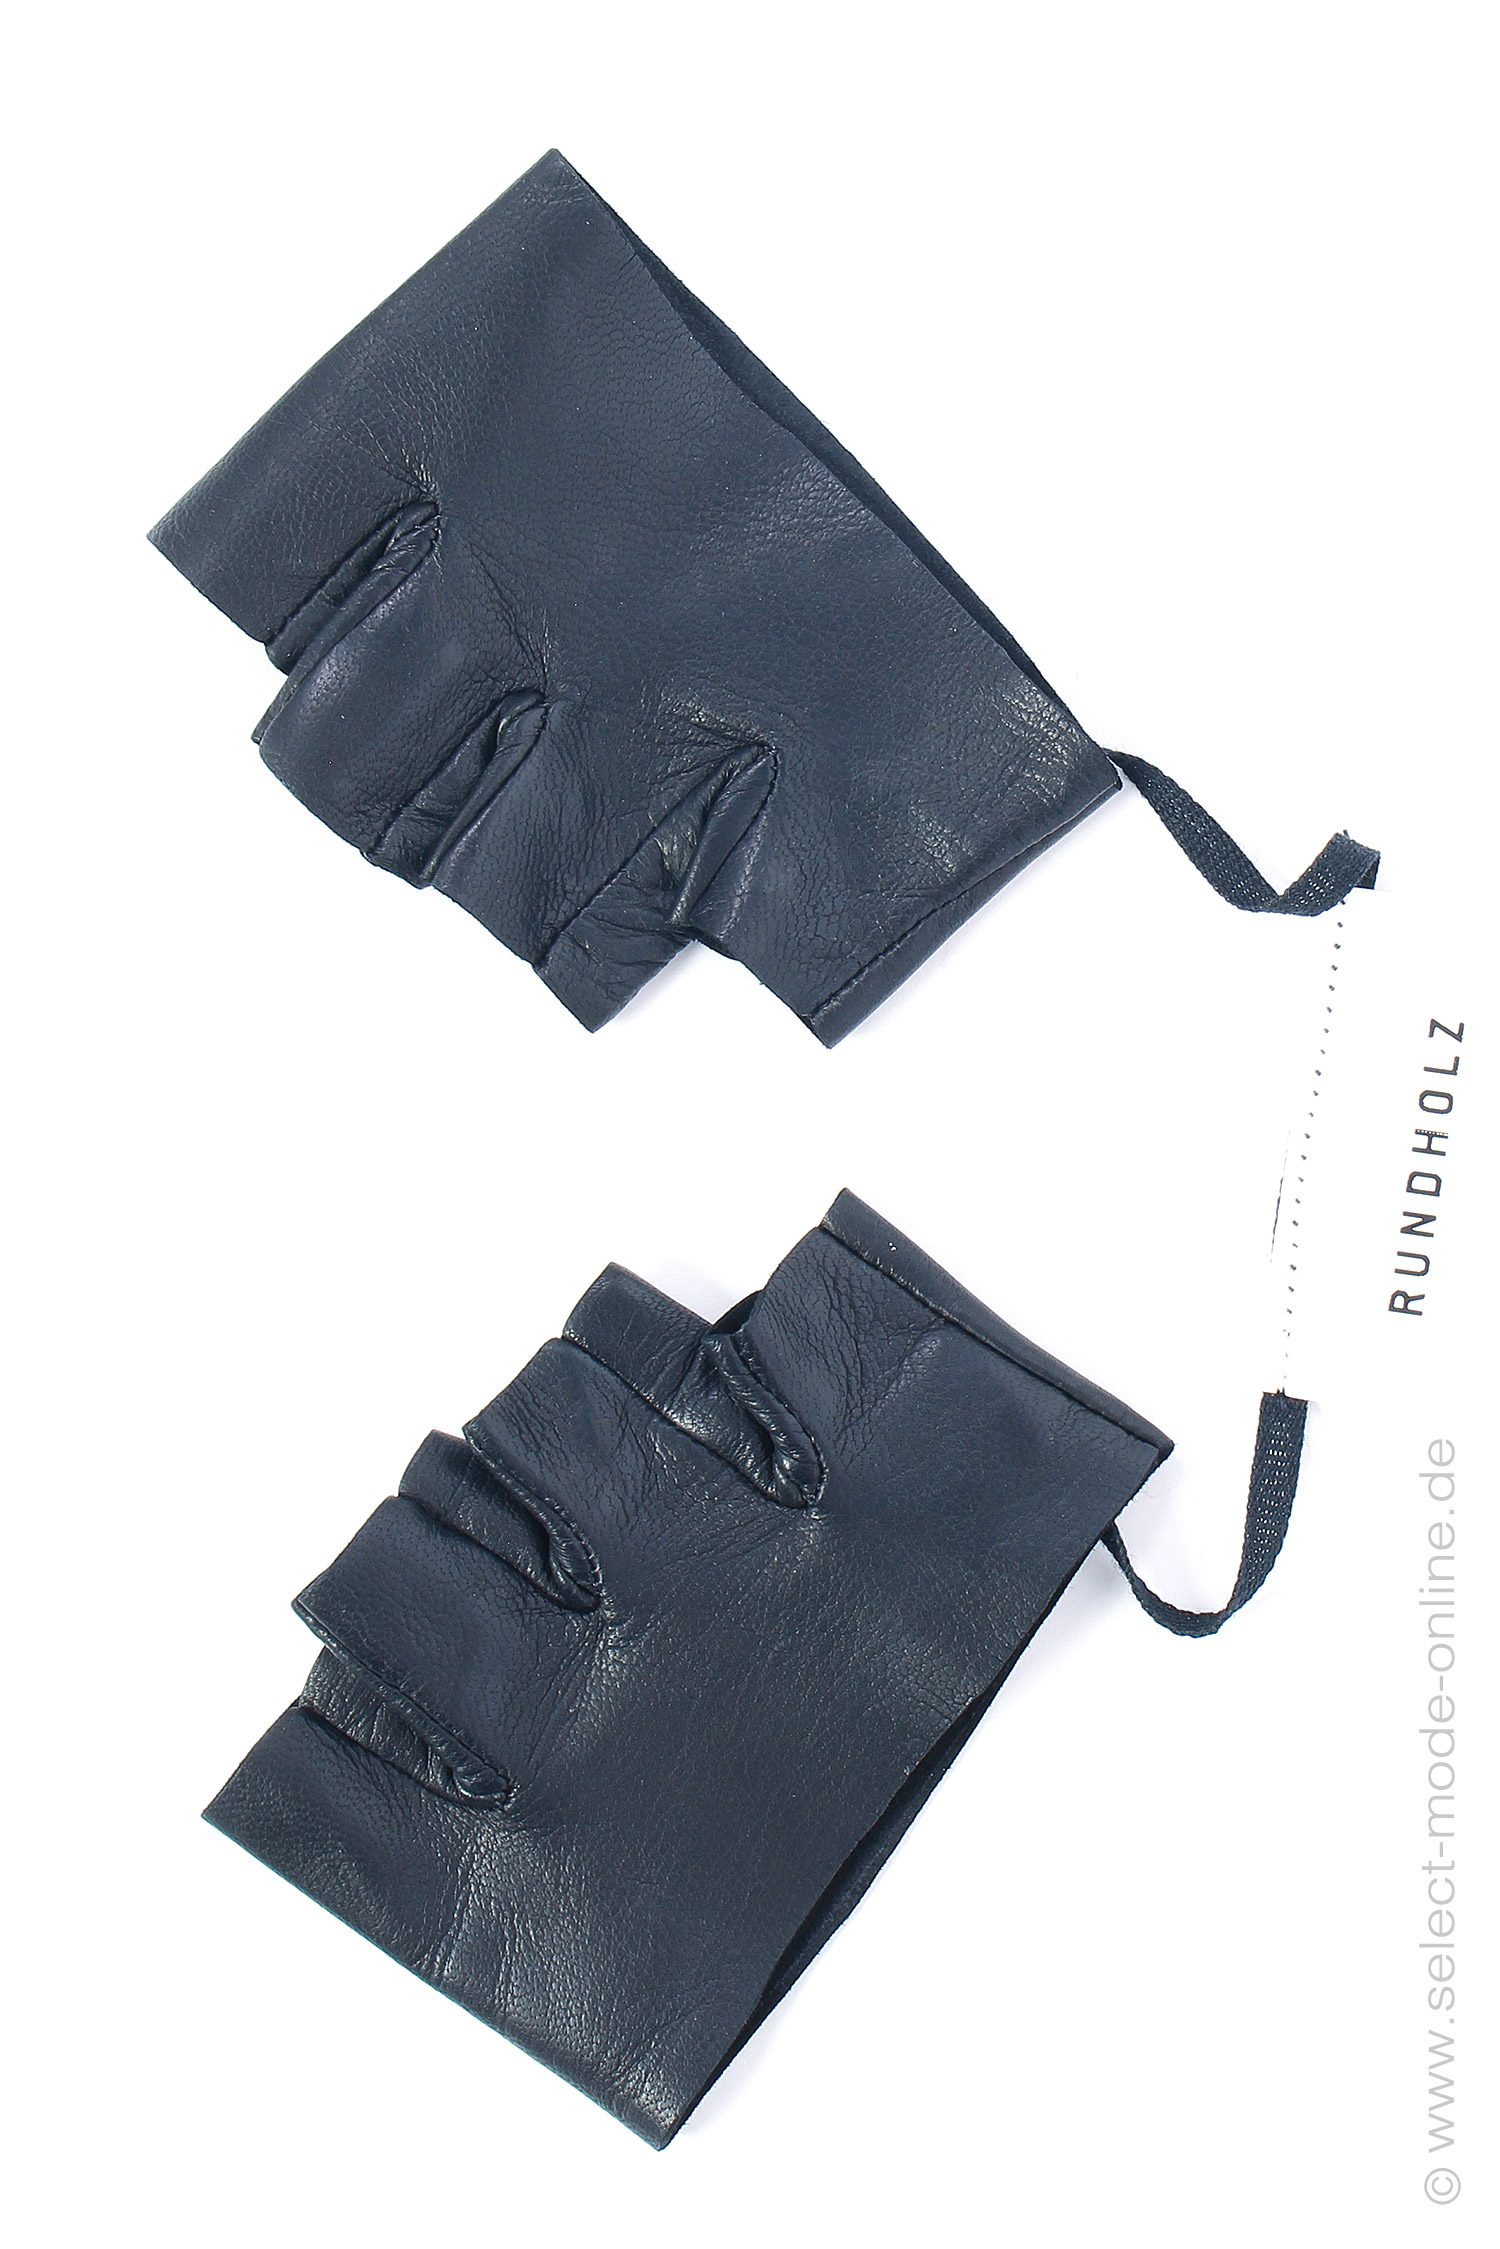 Leder Handschuhe - schwarz - 2231802005